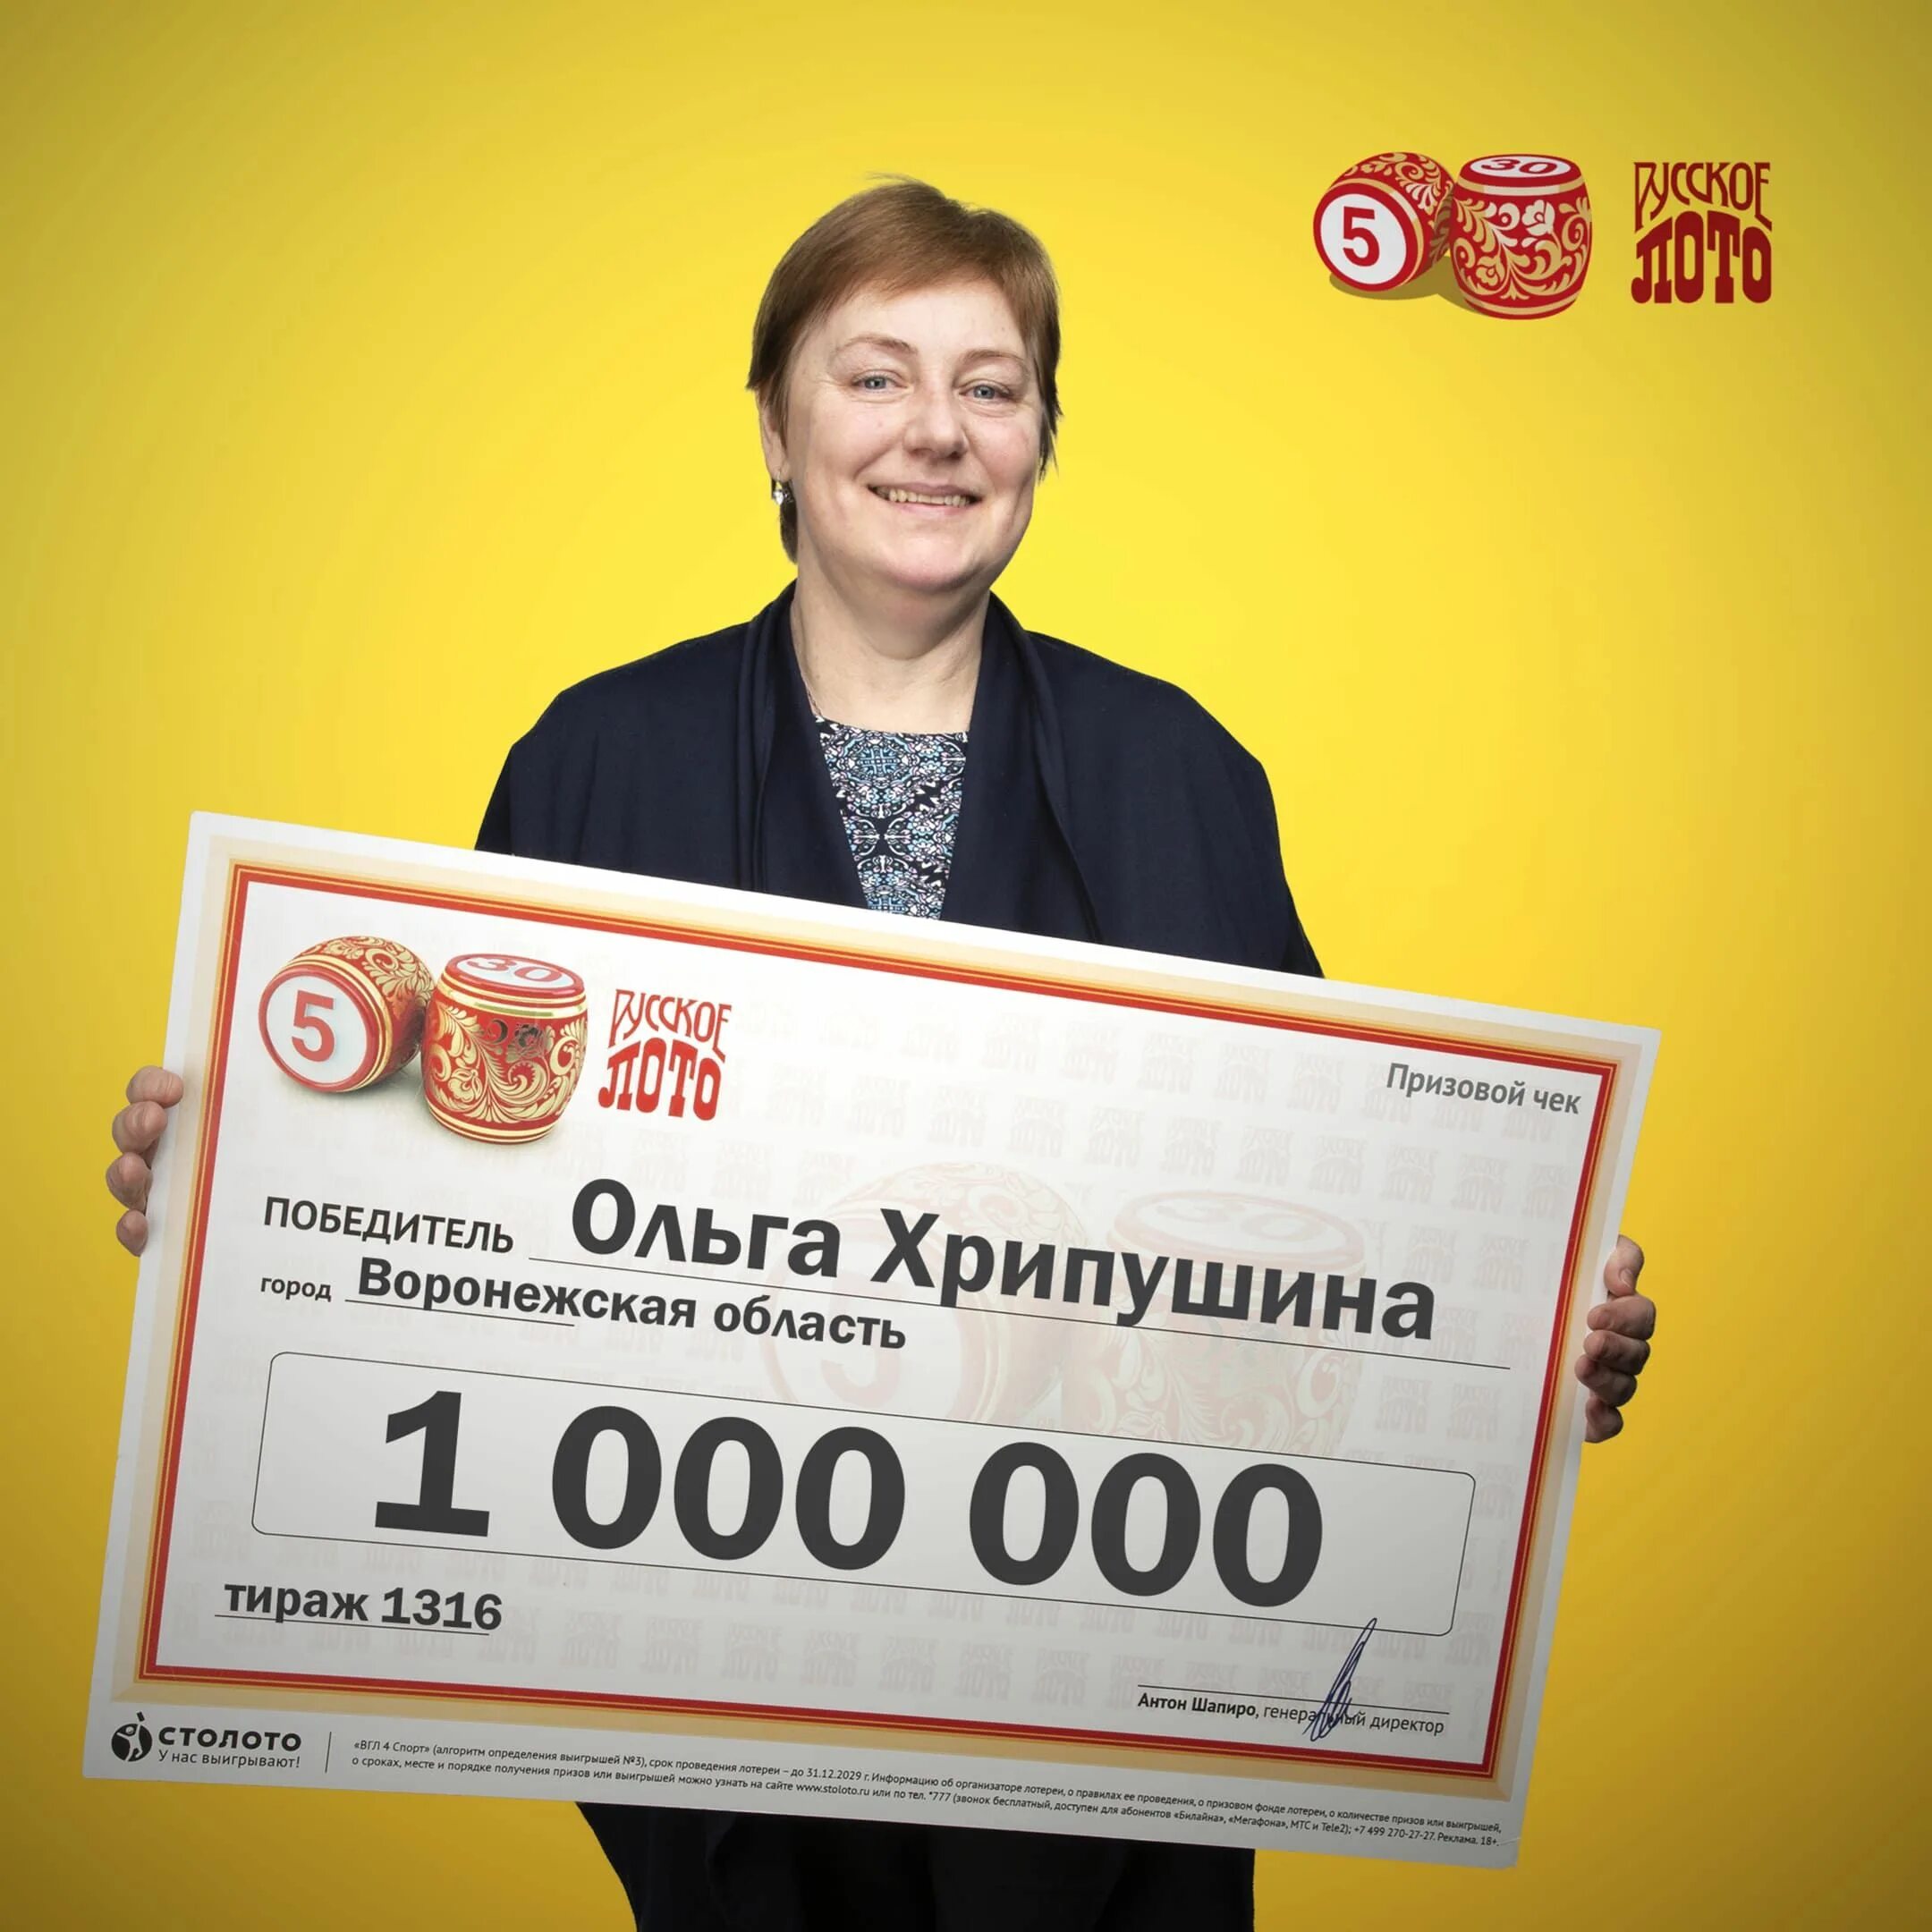 Приз миллион рублей. Выигрыш в русское лото. Выигрыш в лотерею Гослото. Лотерея миллион. Победитель лотереи.